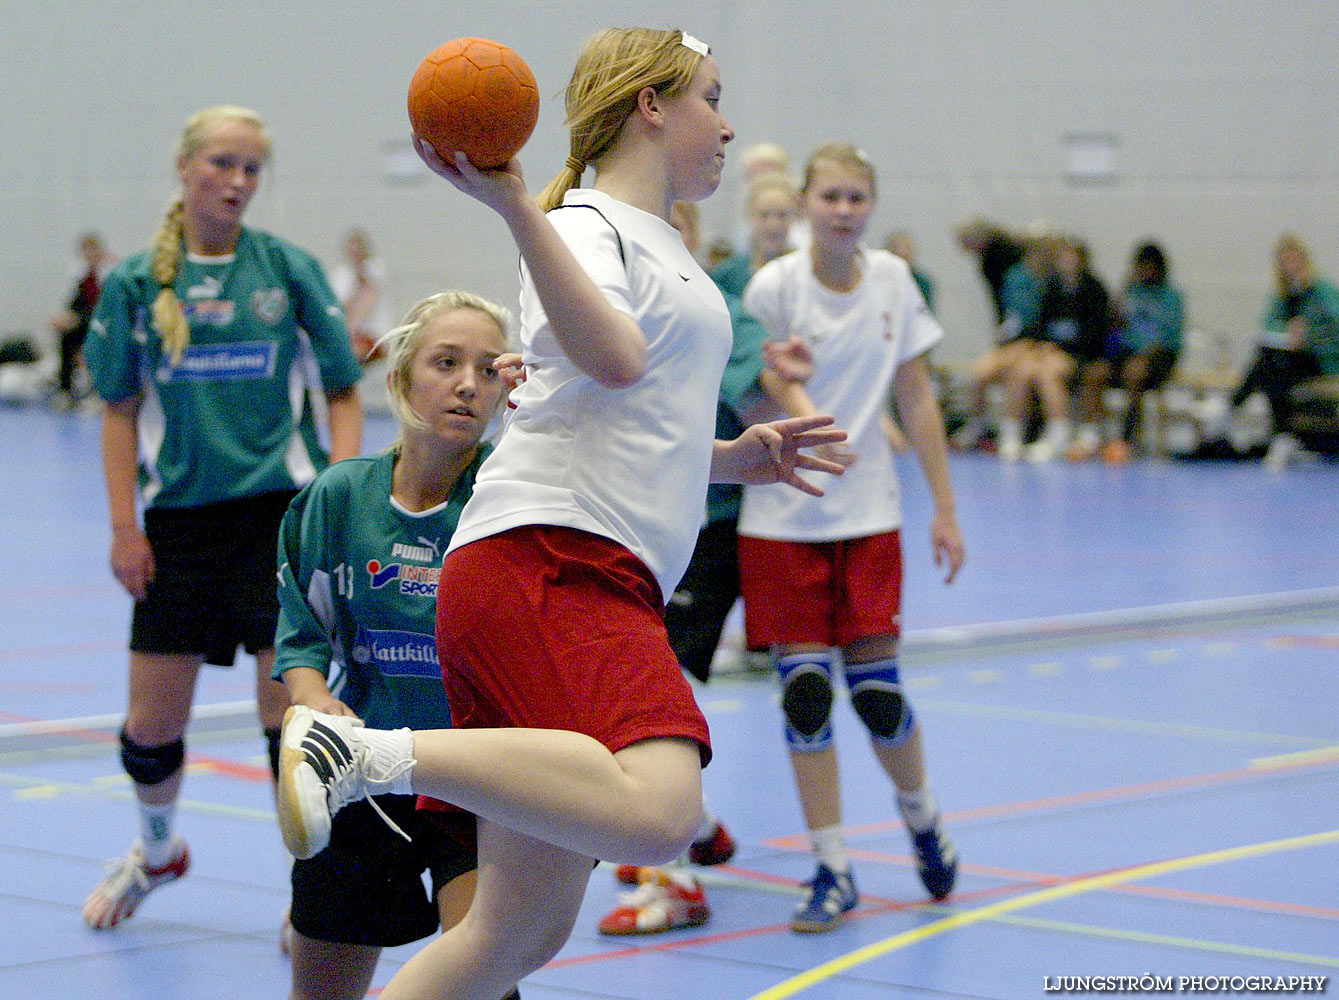 Skadevi Handbollscup 2005 Fredag,mix,Arena Skövde,Skövde,Sverige,Handboll,,2005,141298